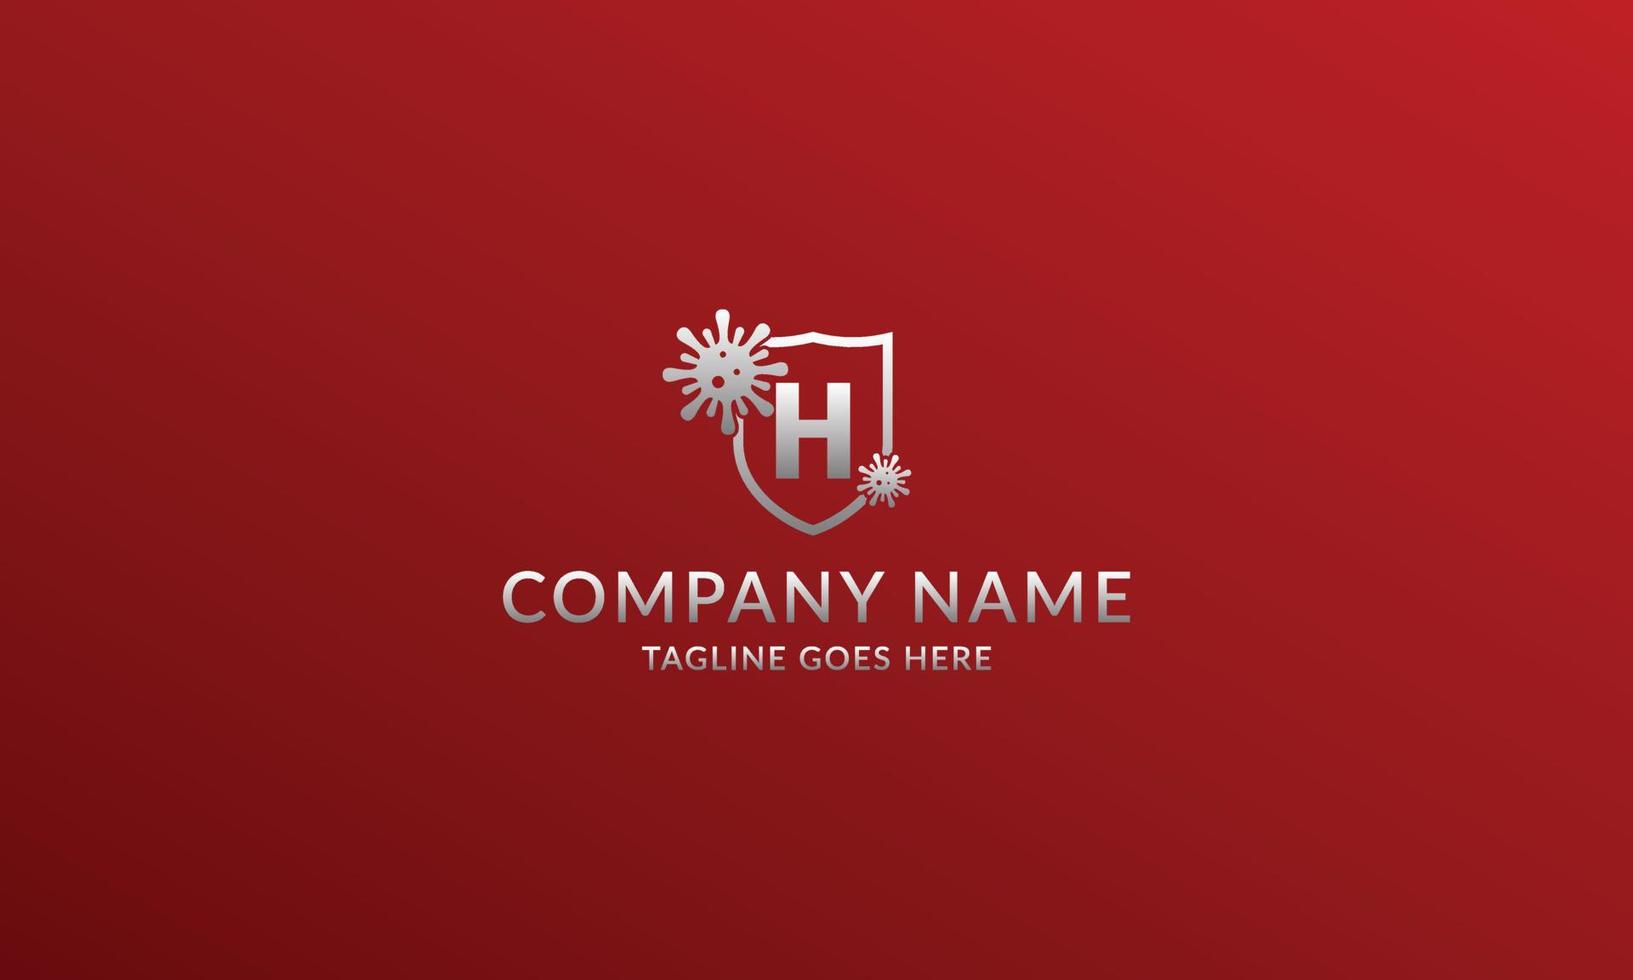 letra h plantilla de logotipo de escudo antiviral para producto de empresa o voluntario vector